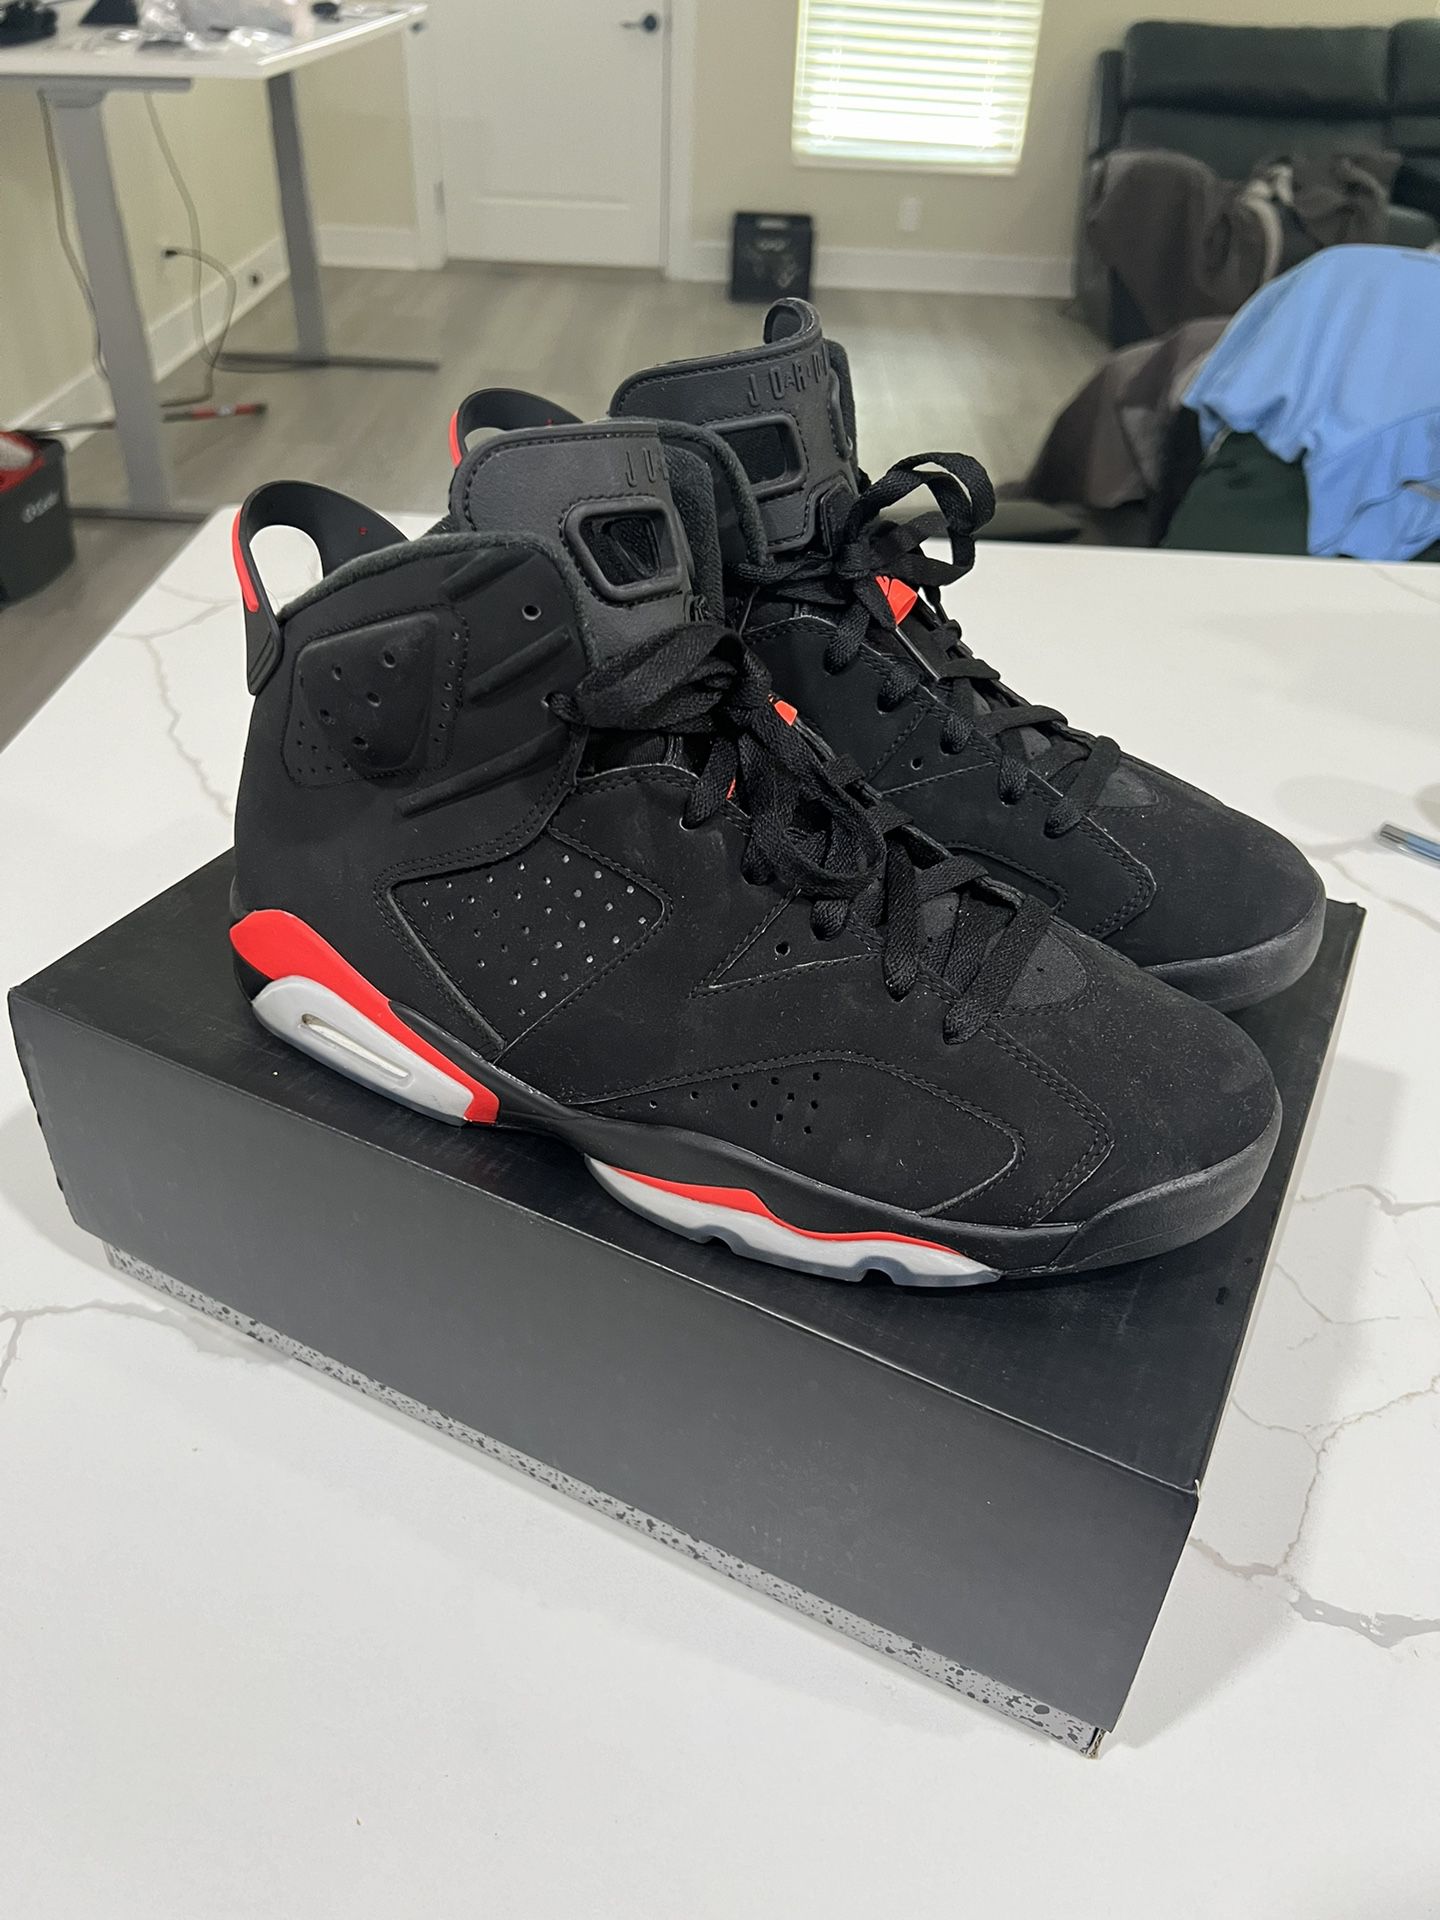 Jordan 6 Infrared Size 11.5 Used